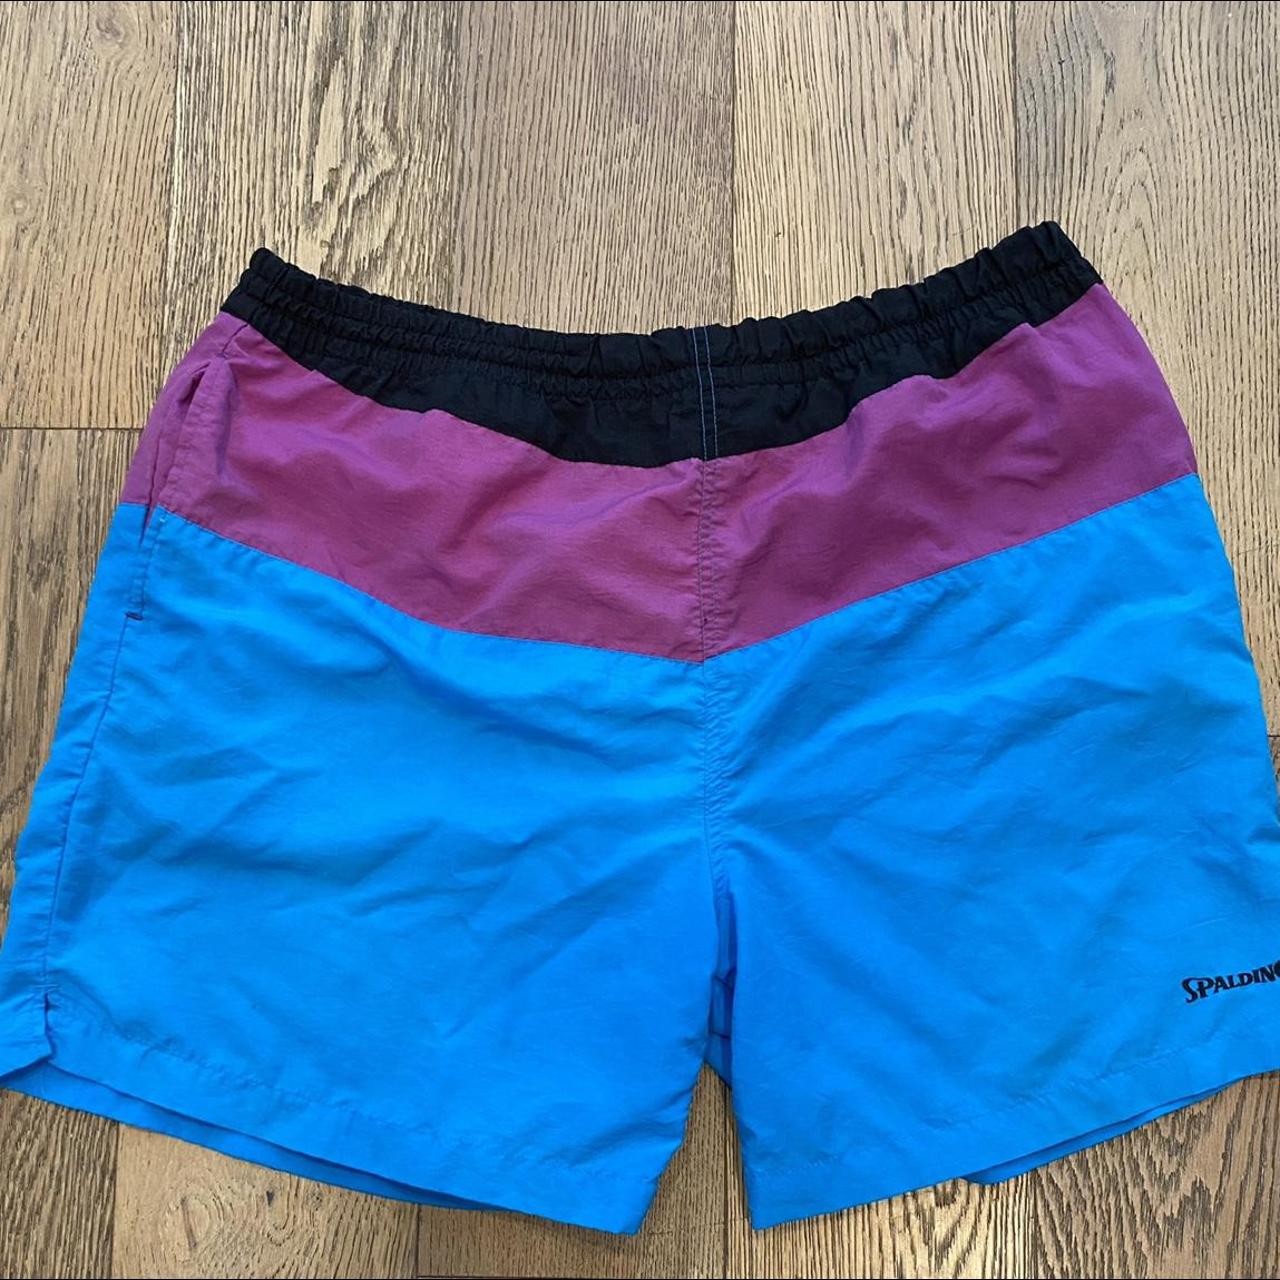 Vintage 1993 Spaulding Shorts/Trunks. Above the... - Depop